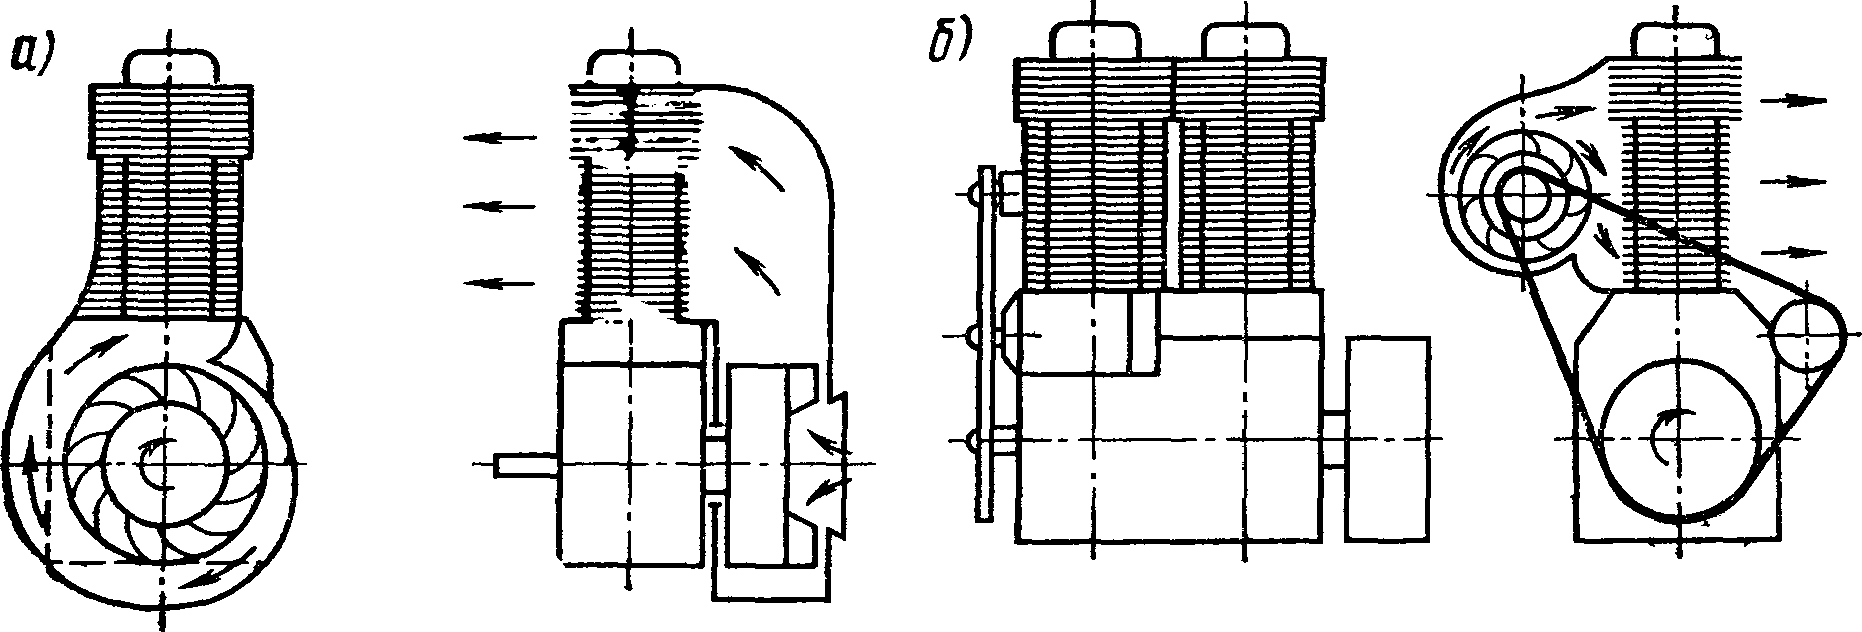 Схема воздушного охлаждения двигателей